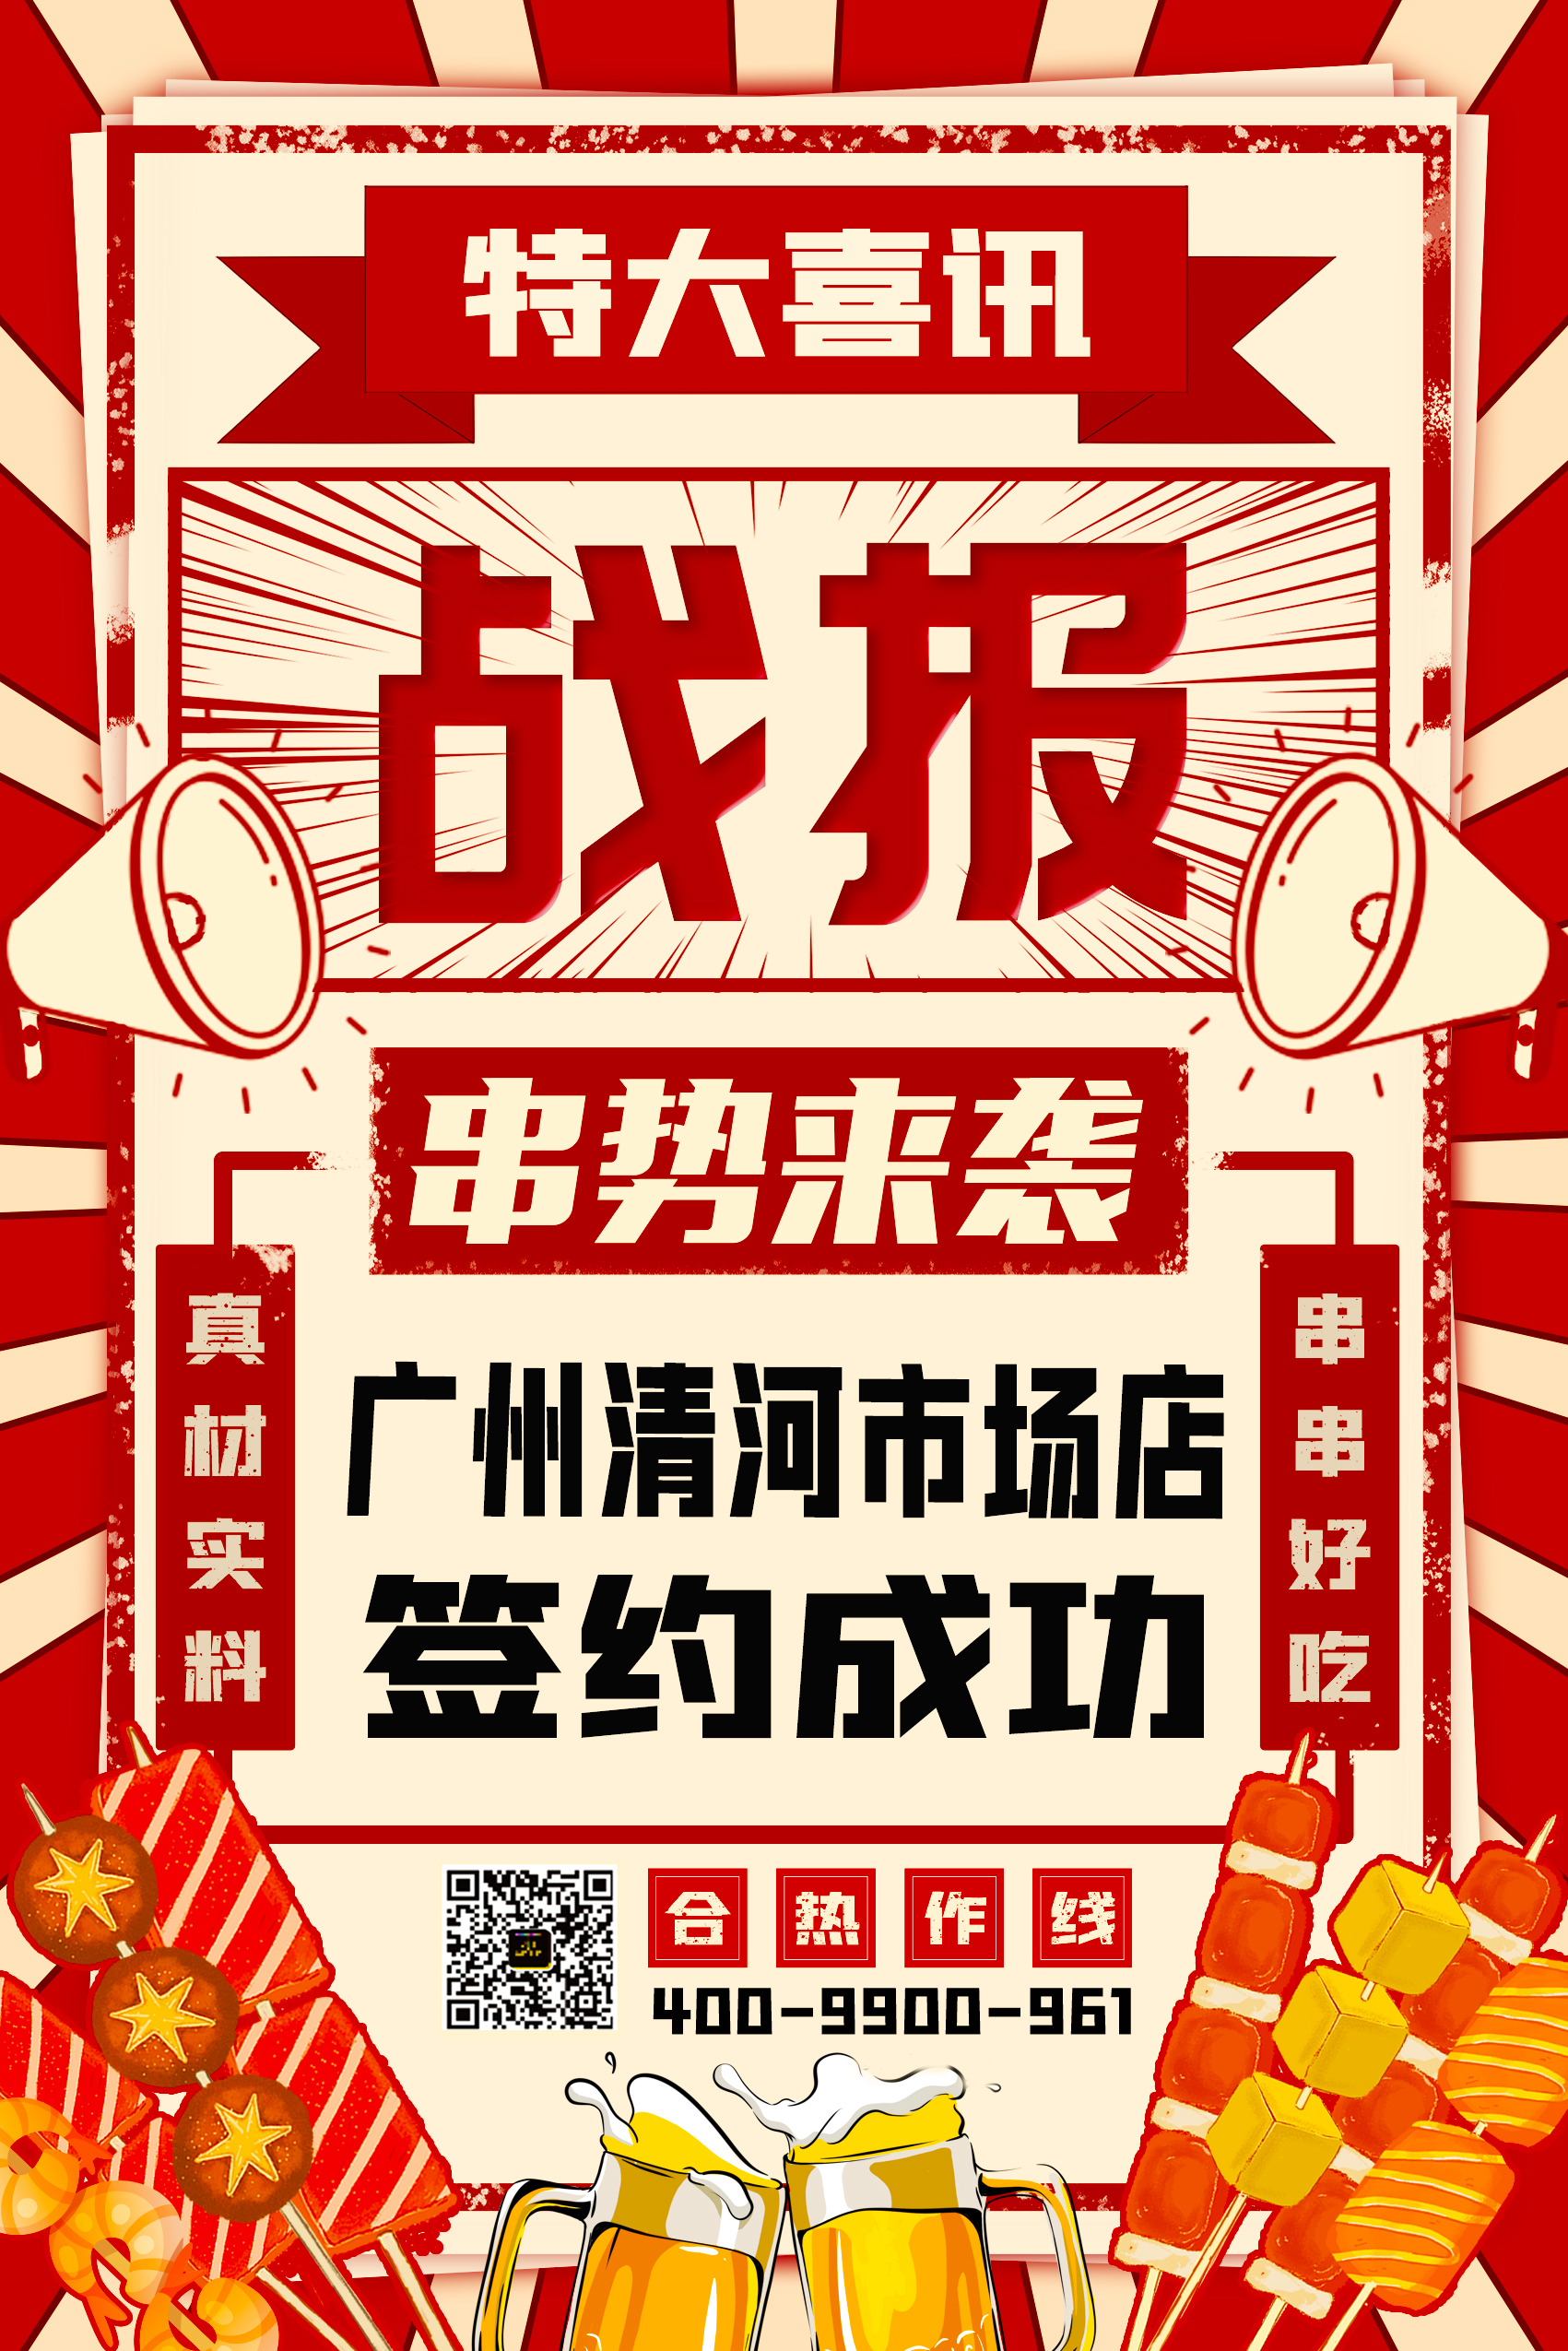 热烈祝贺“串势来袭” 广州清河市场店签约成功！